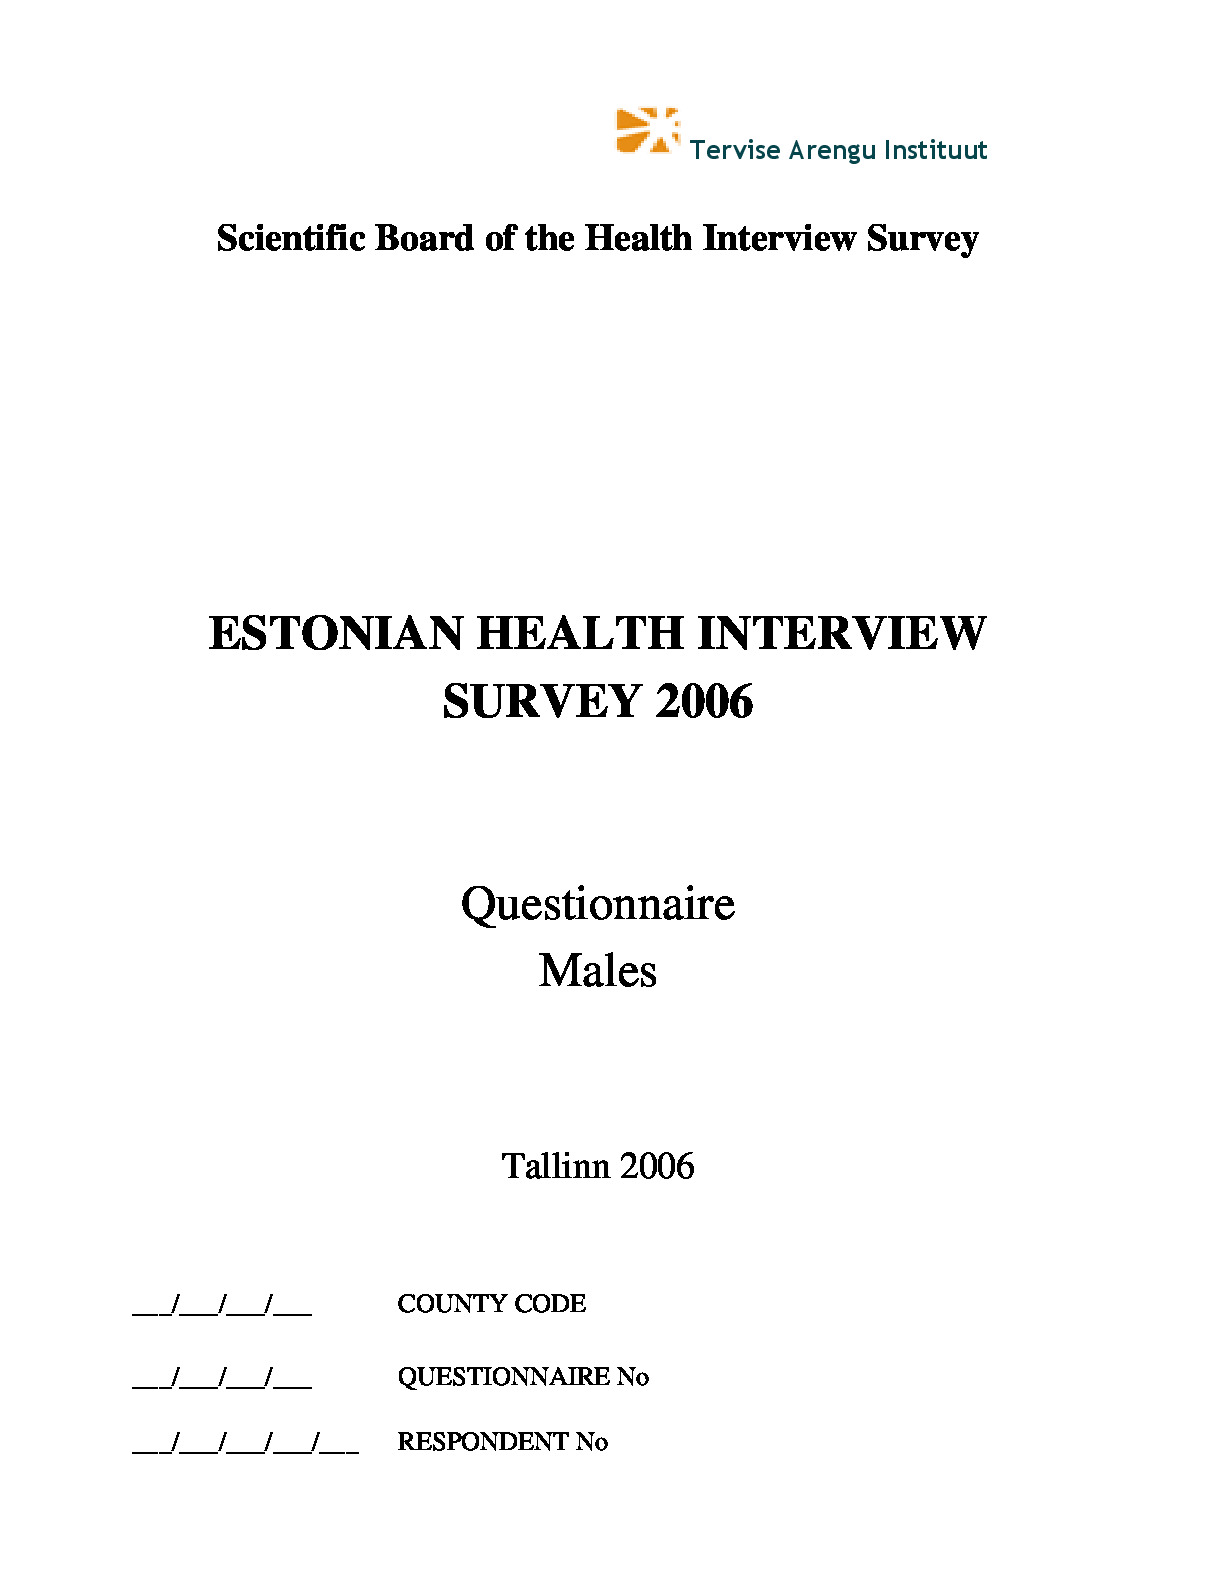 Estonian Health Interview Survey 2006 questionnaire (males)